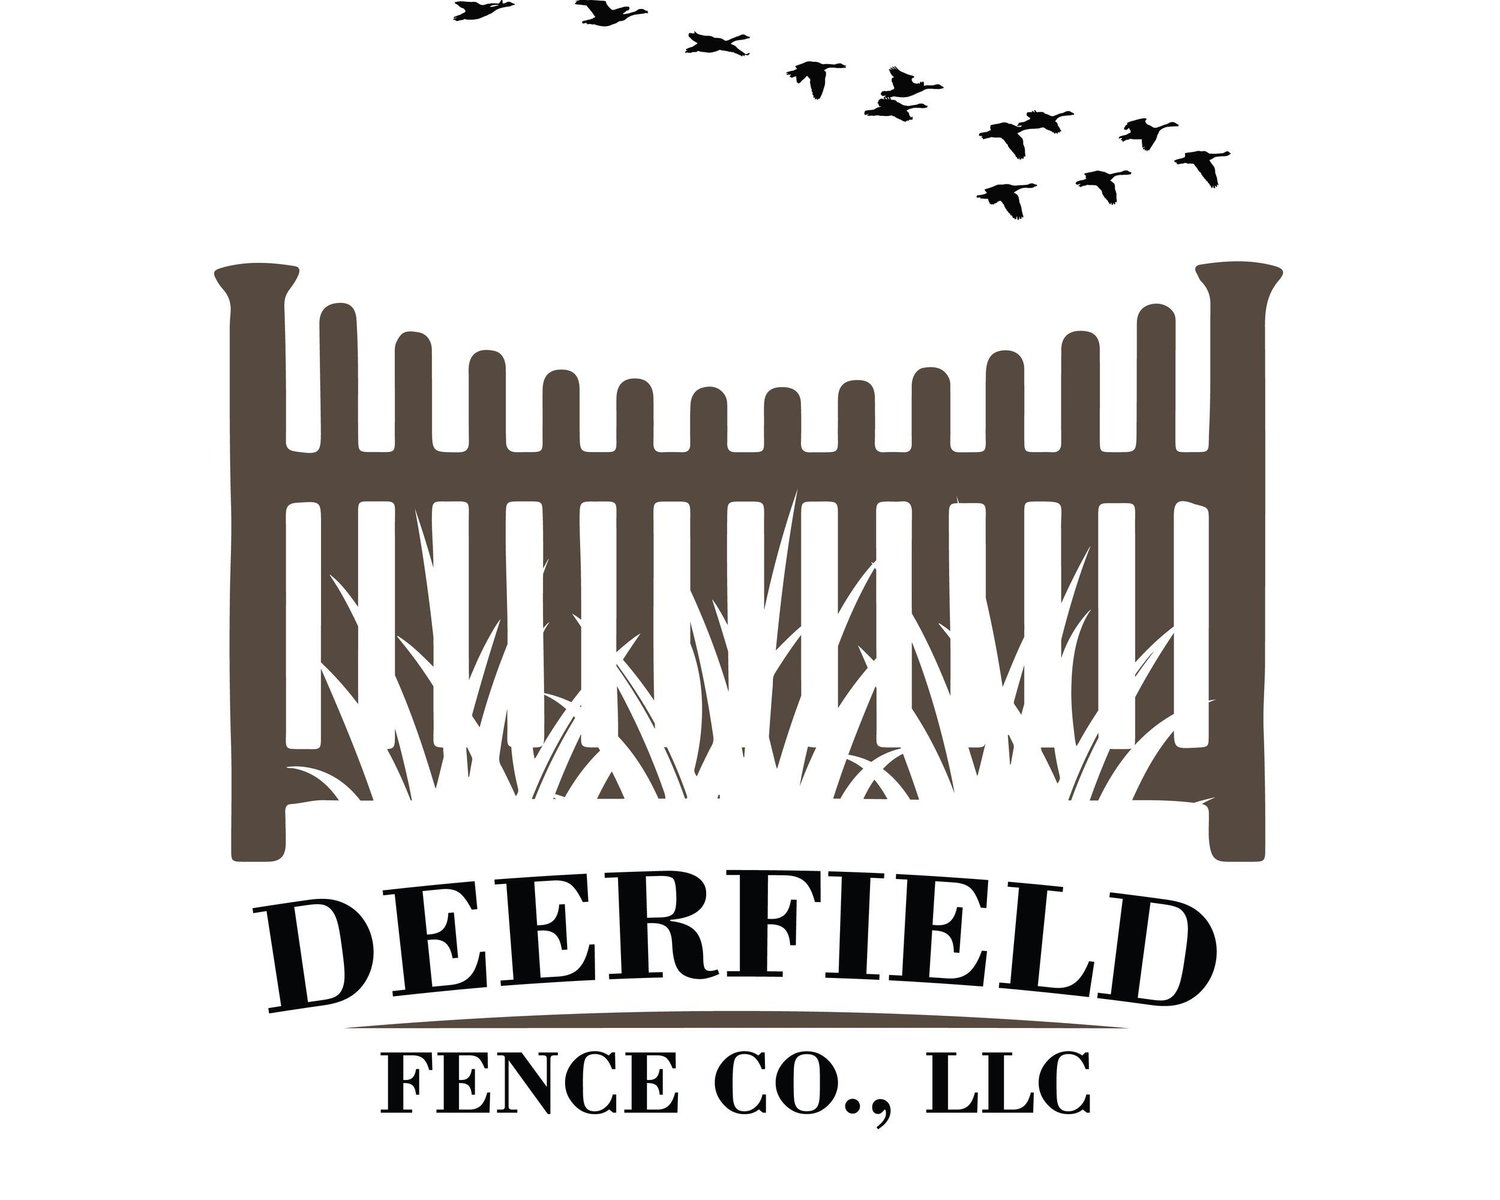 Deerfield Fence Co. LLC